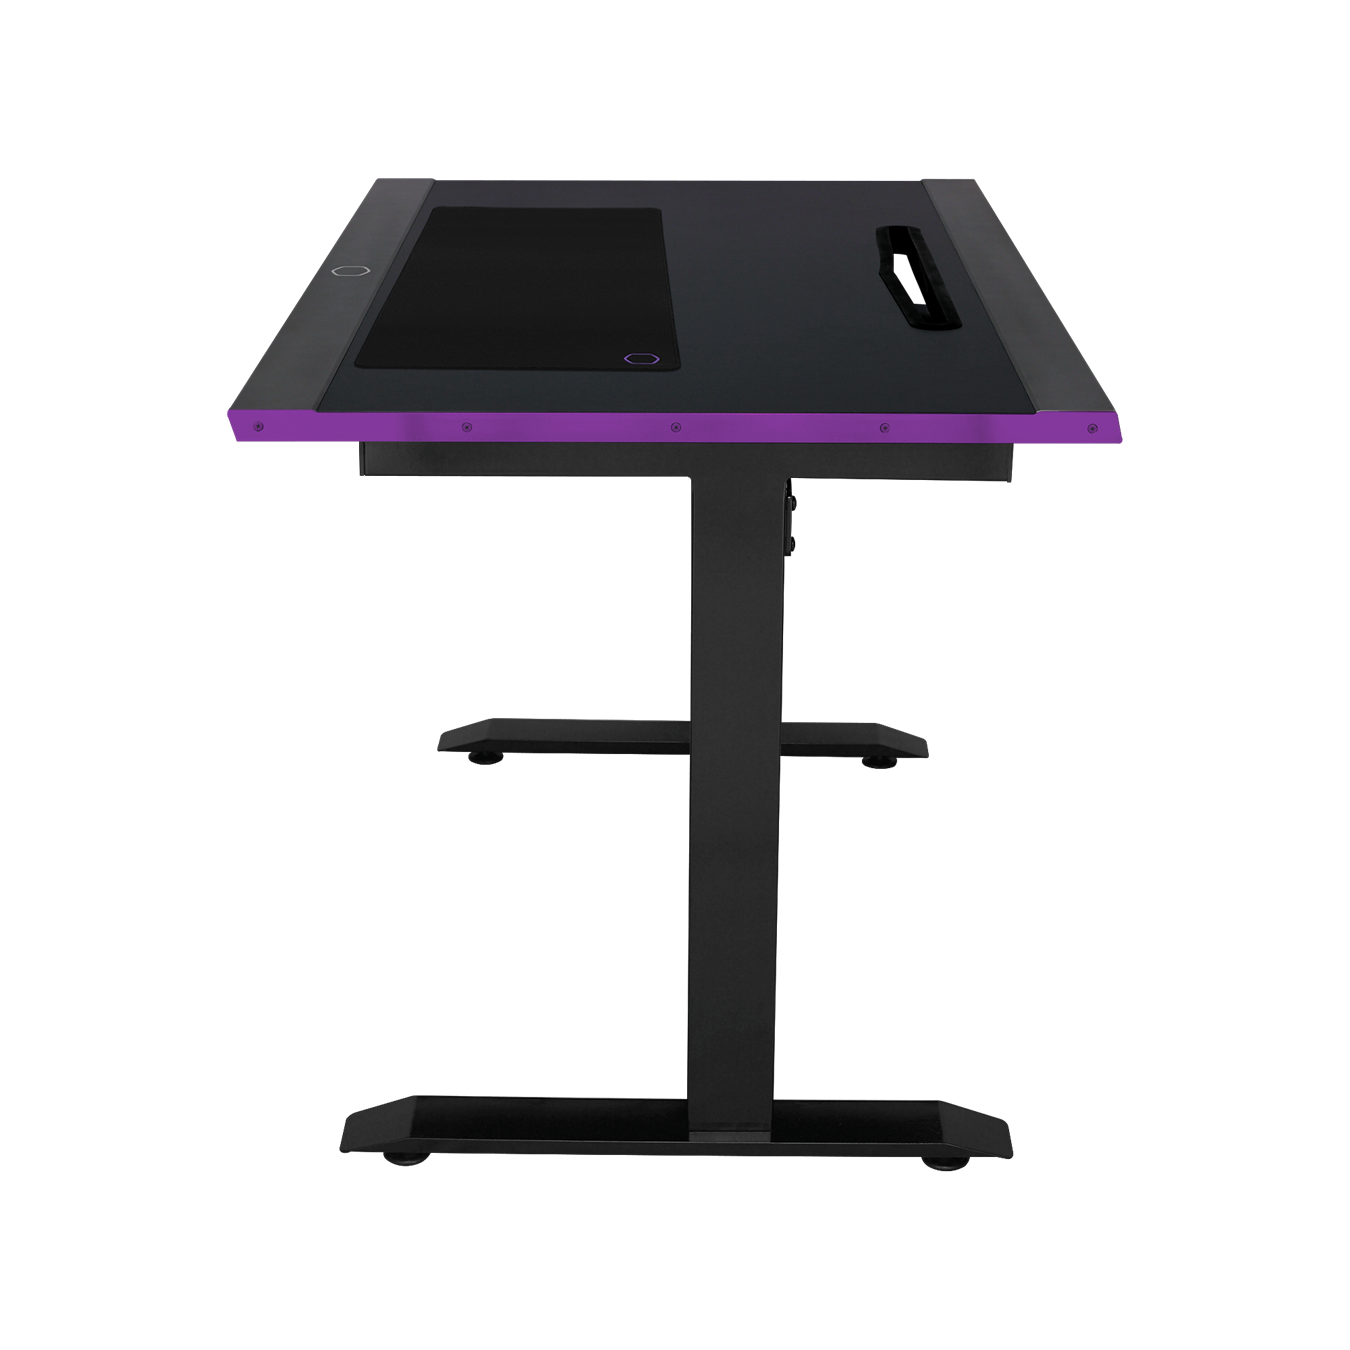 GD120 ARGB Gaming Desk - Tilt side view